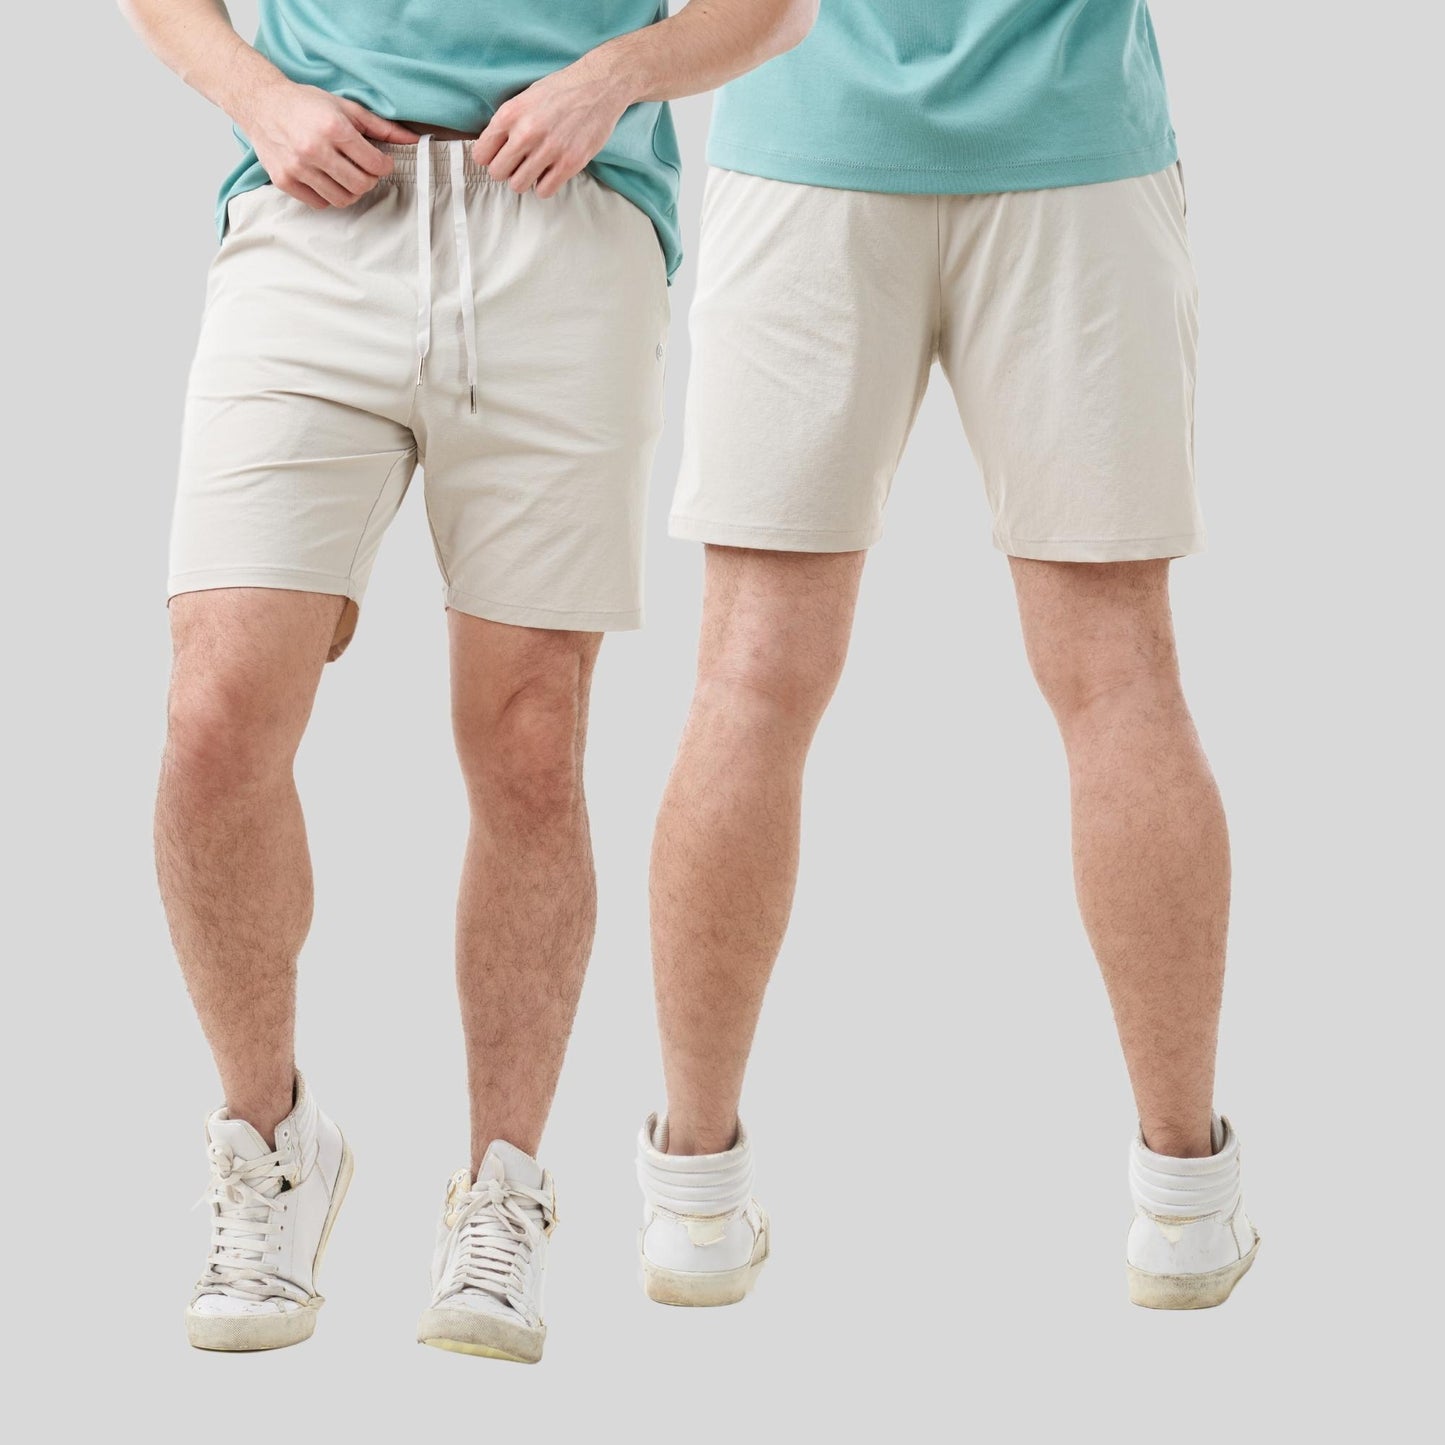 AVIVA UV Protection Leisure Men Short Pants (91-2018)